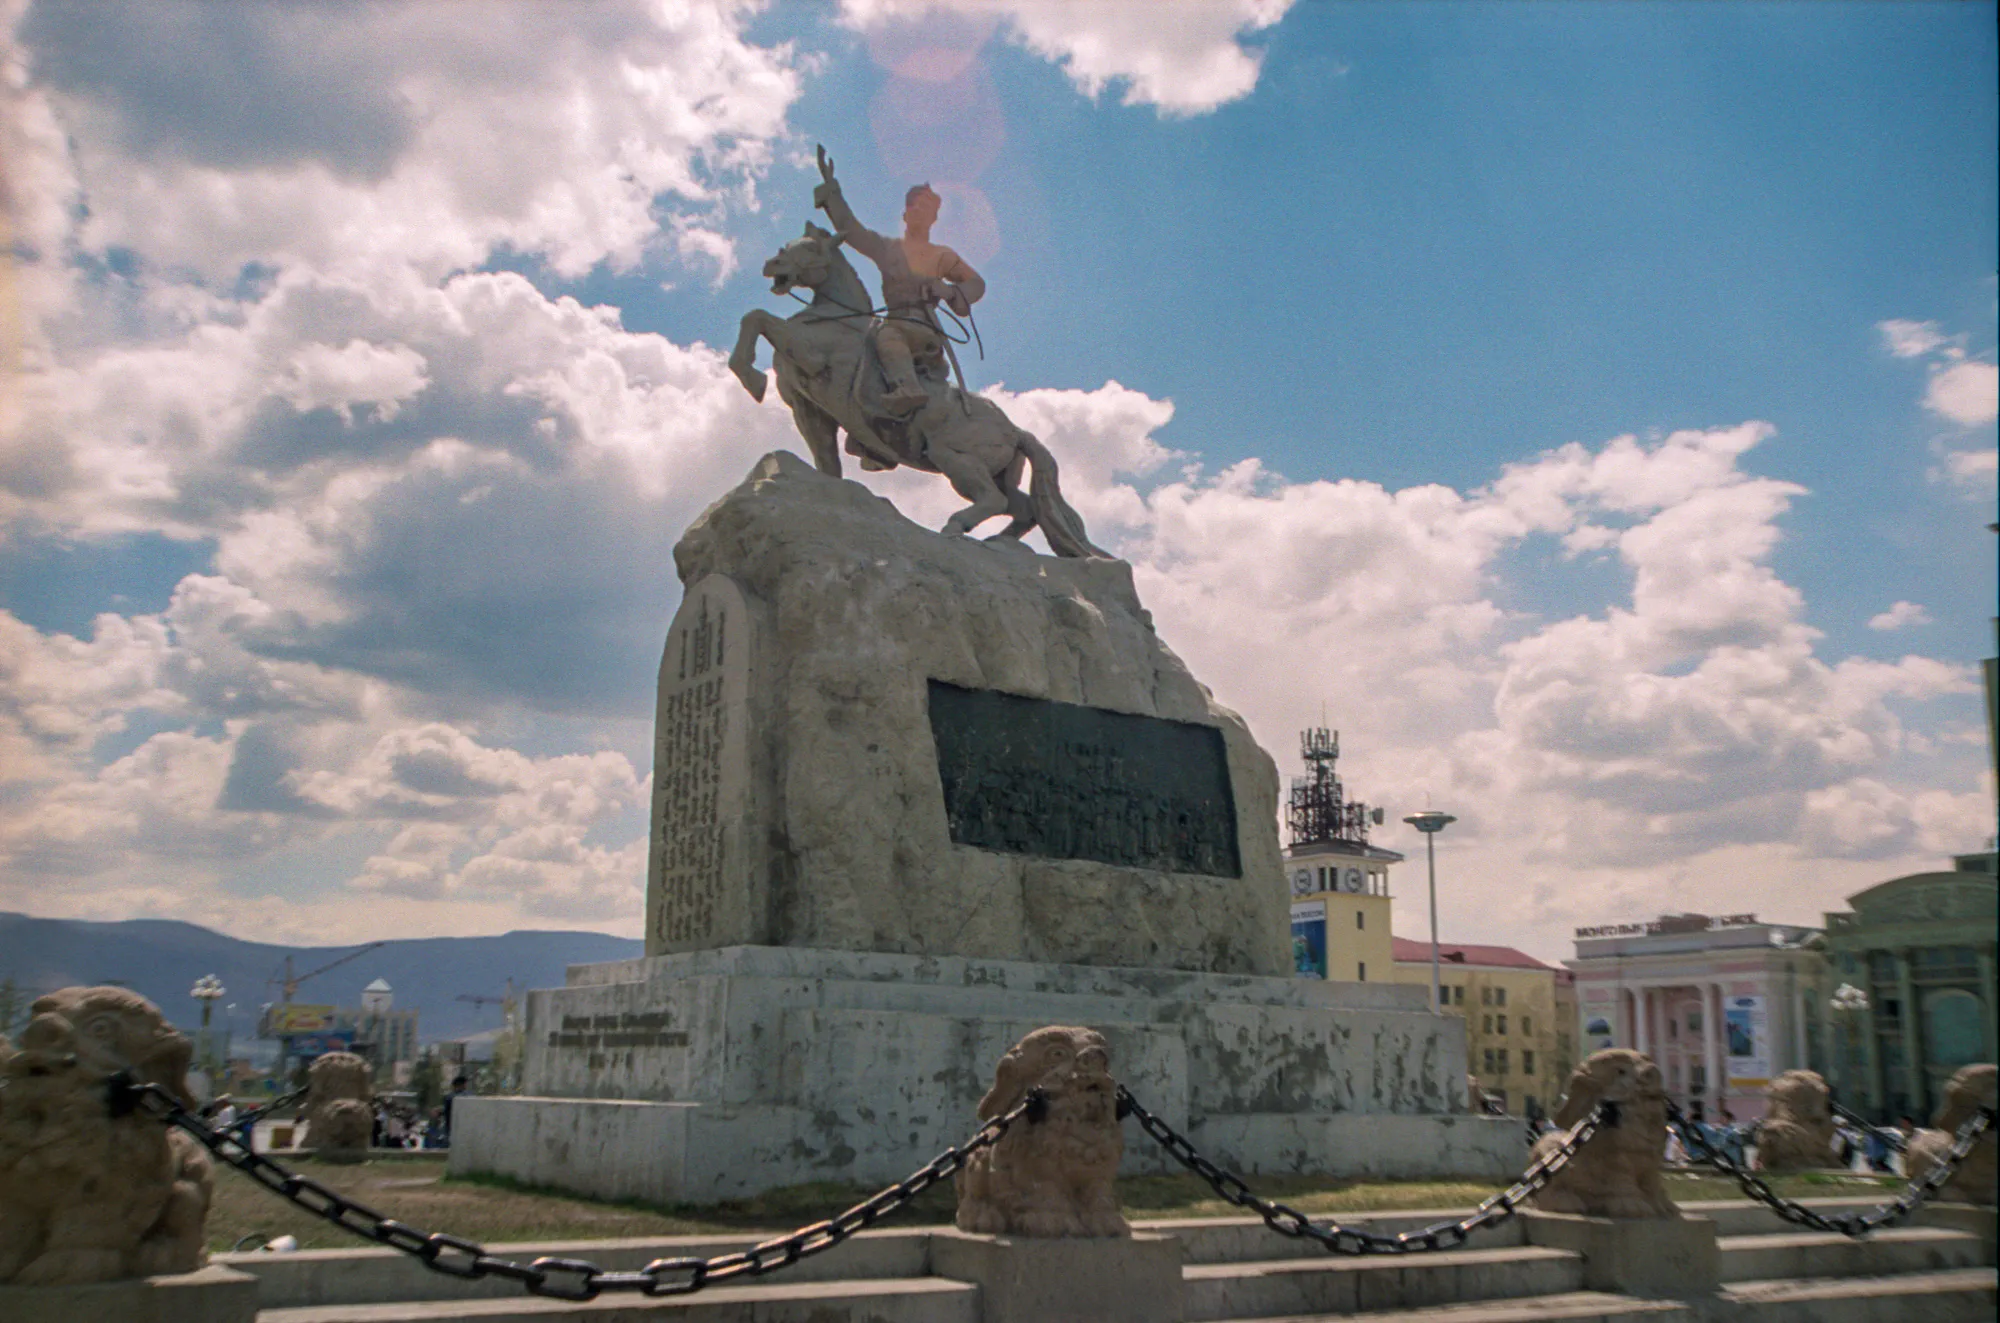 Statue of Damdin Sükhbaatar